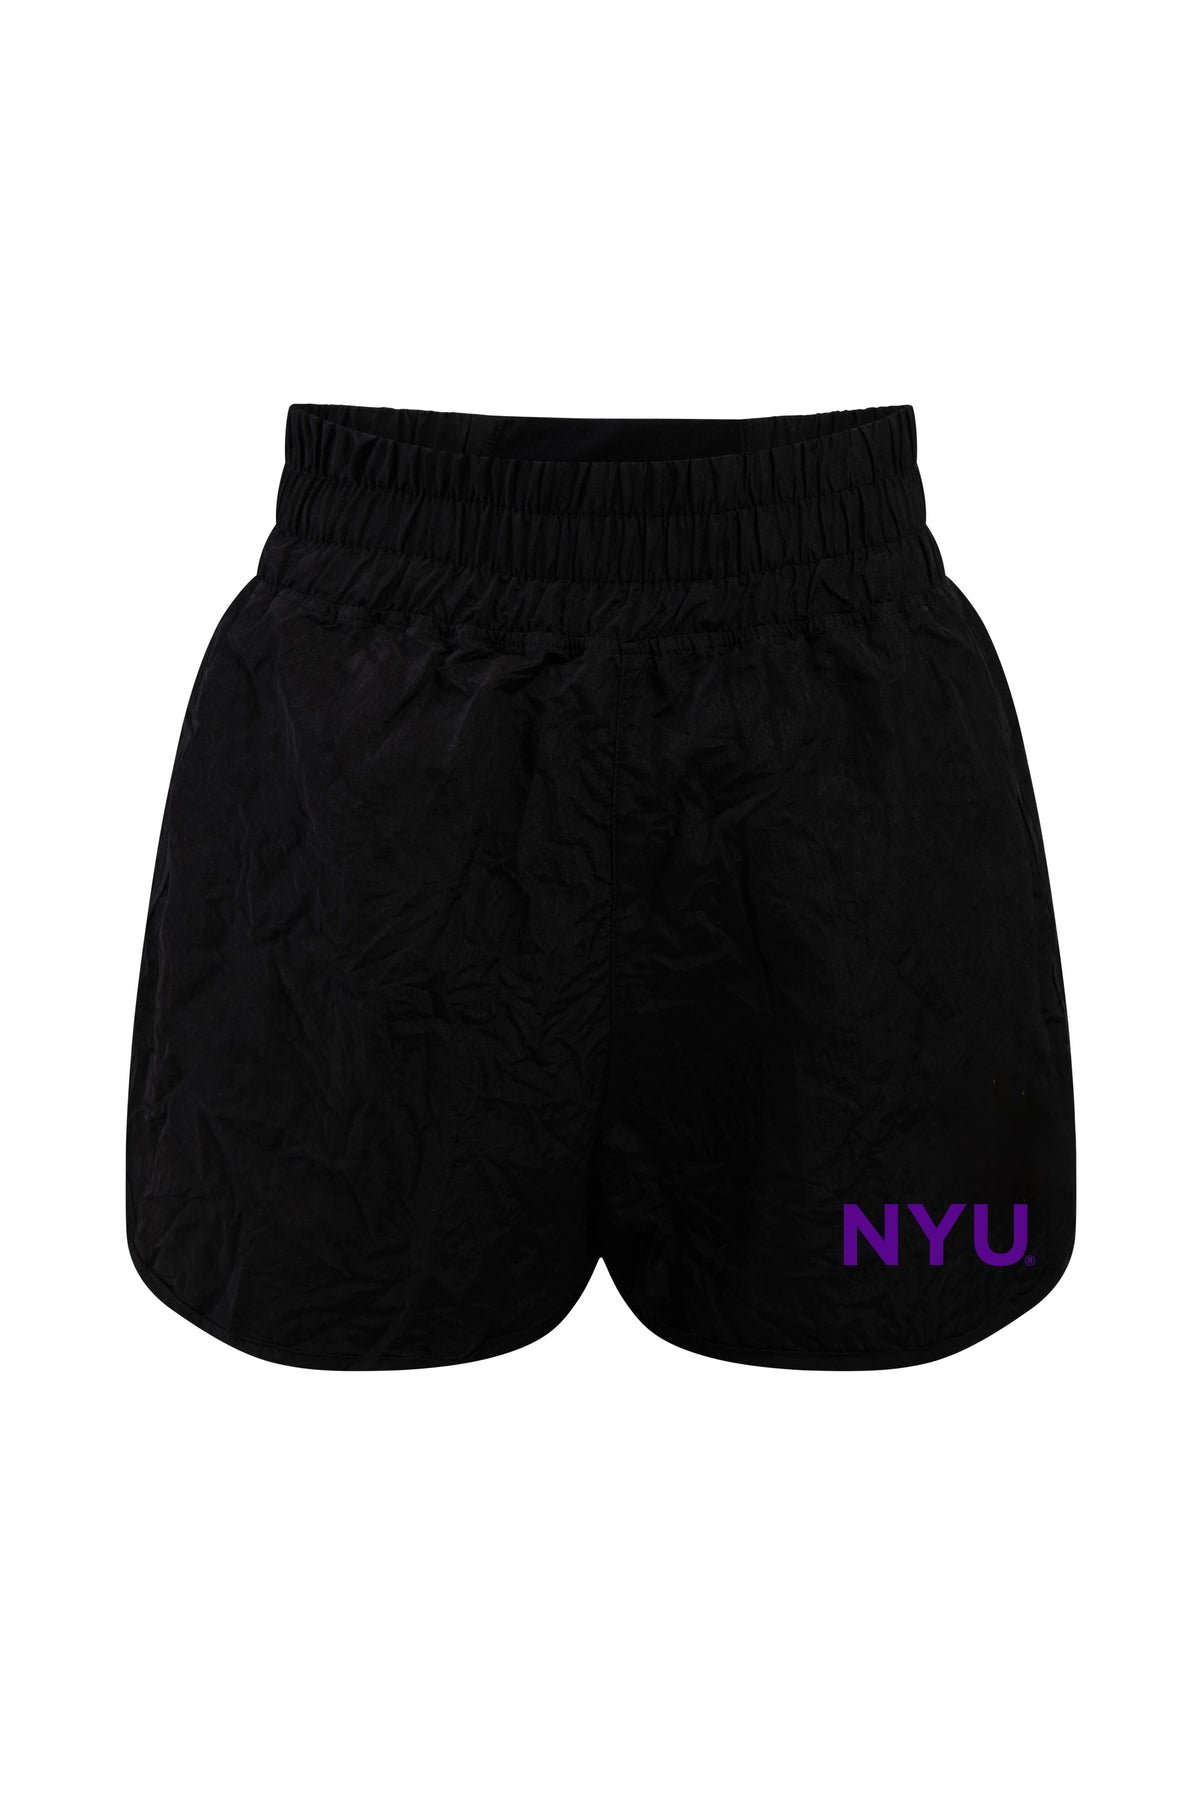 New York University Boxer Short